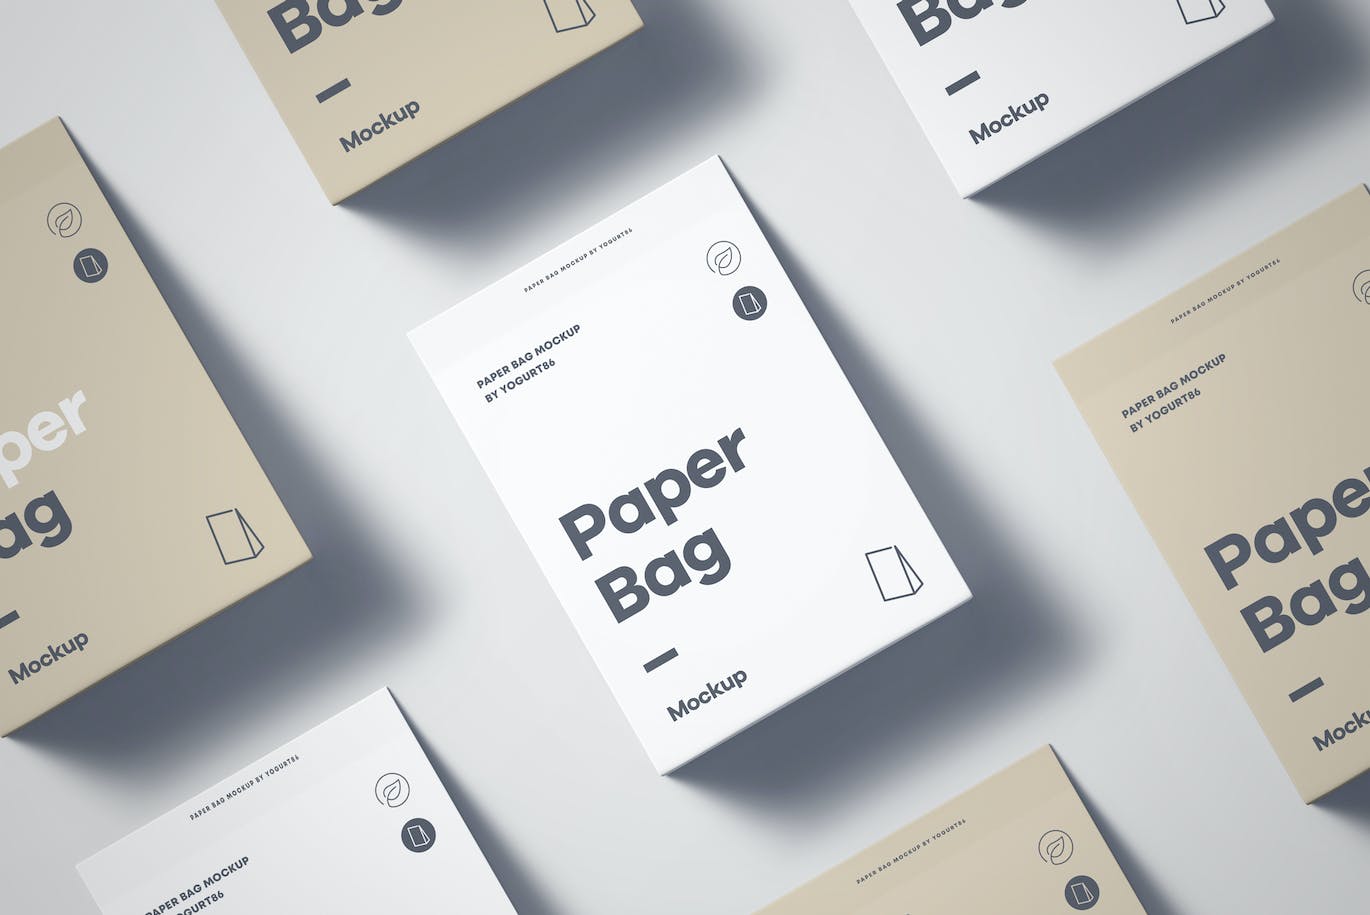 纸袋设计样机素材 (PSD,PDF)